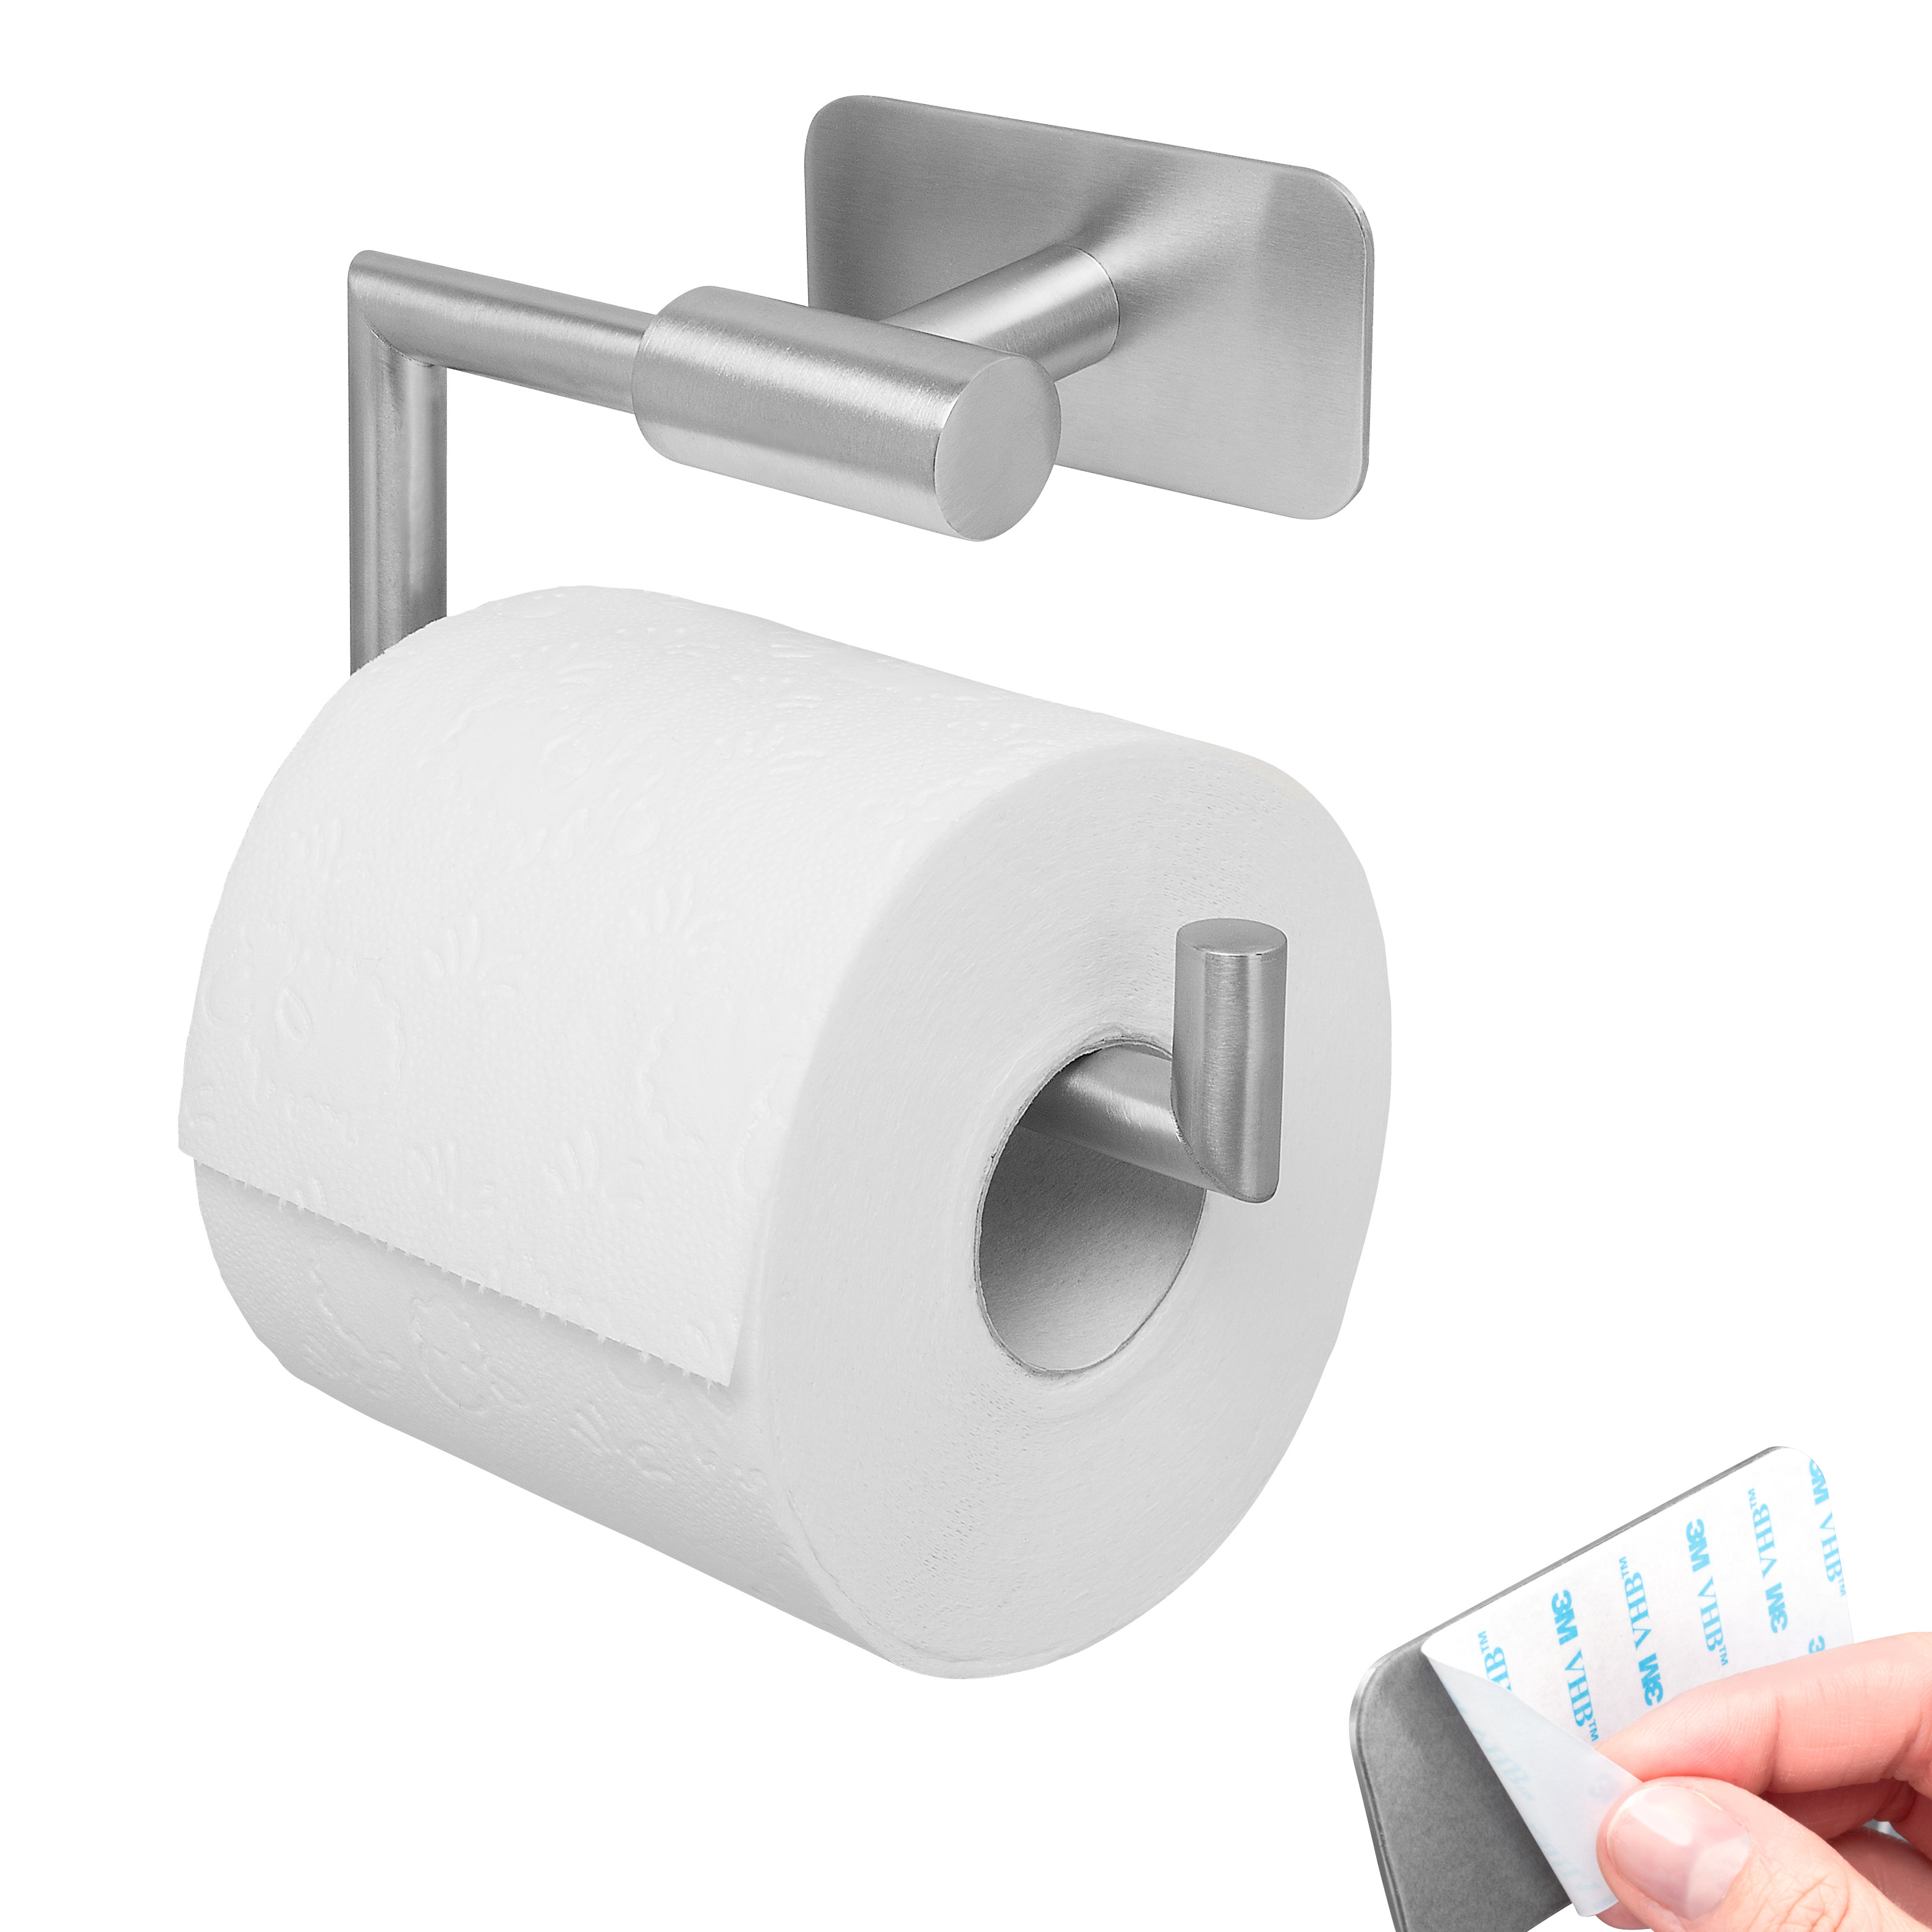 B-Ware Bad-Serie PIAZZA TAPE Toilettenpapierhalter selbstklebend Edelstahl, matt kein Bohren 3M Klebebefestigung Papierrollenhalter